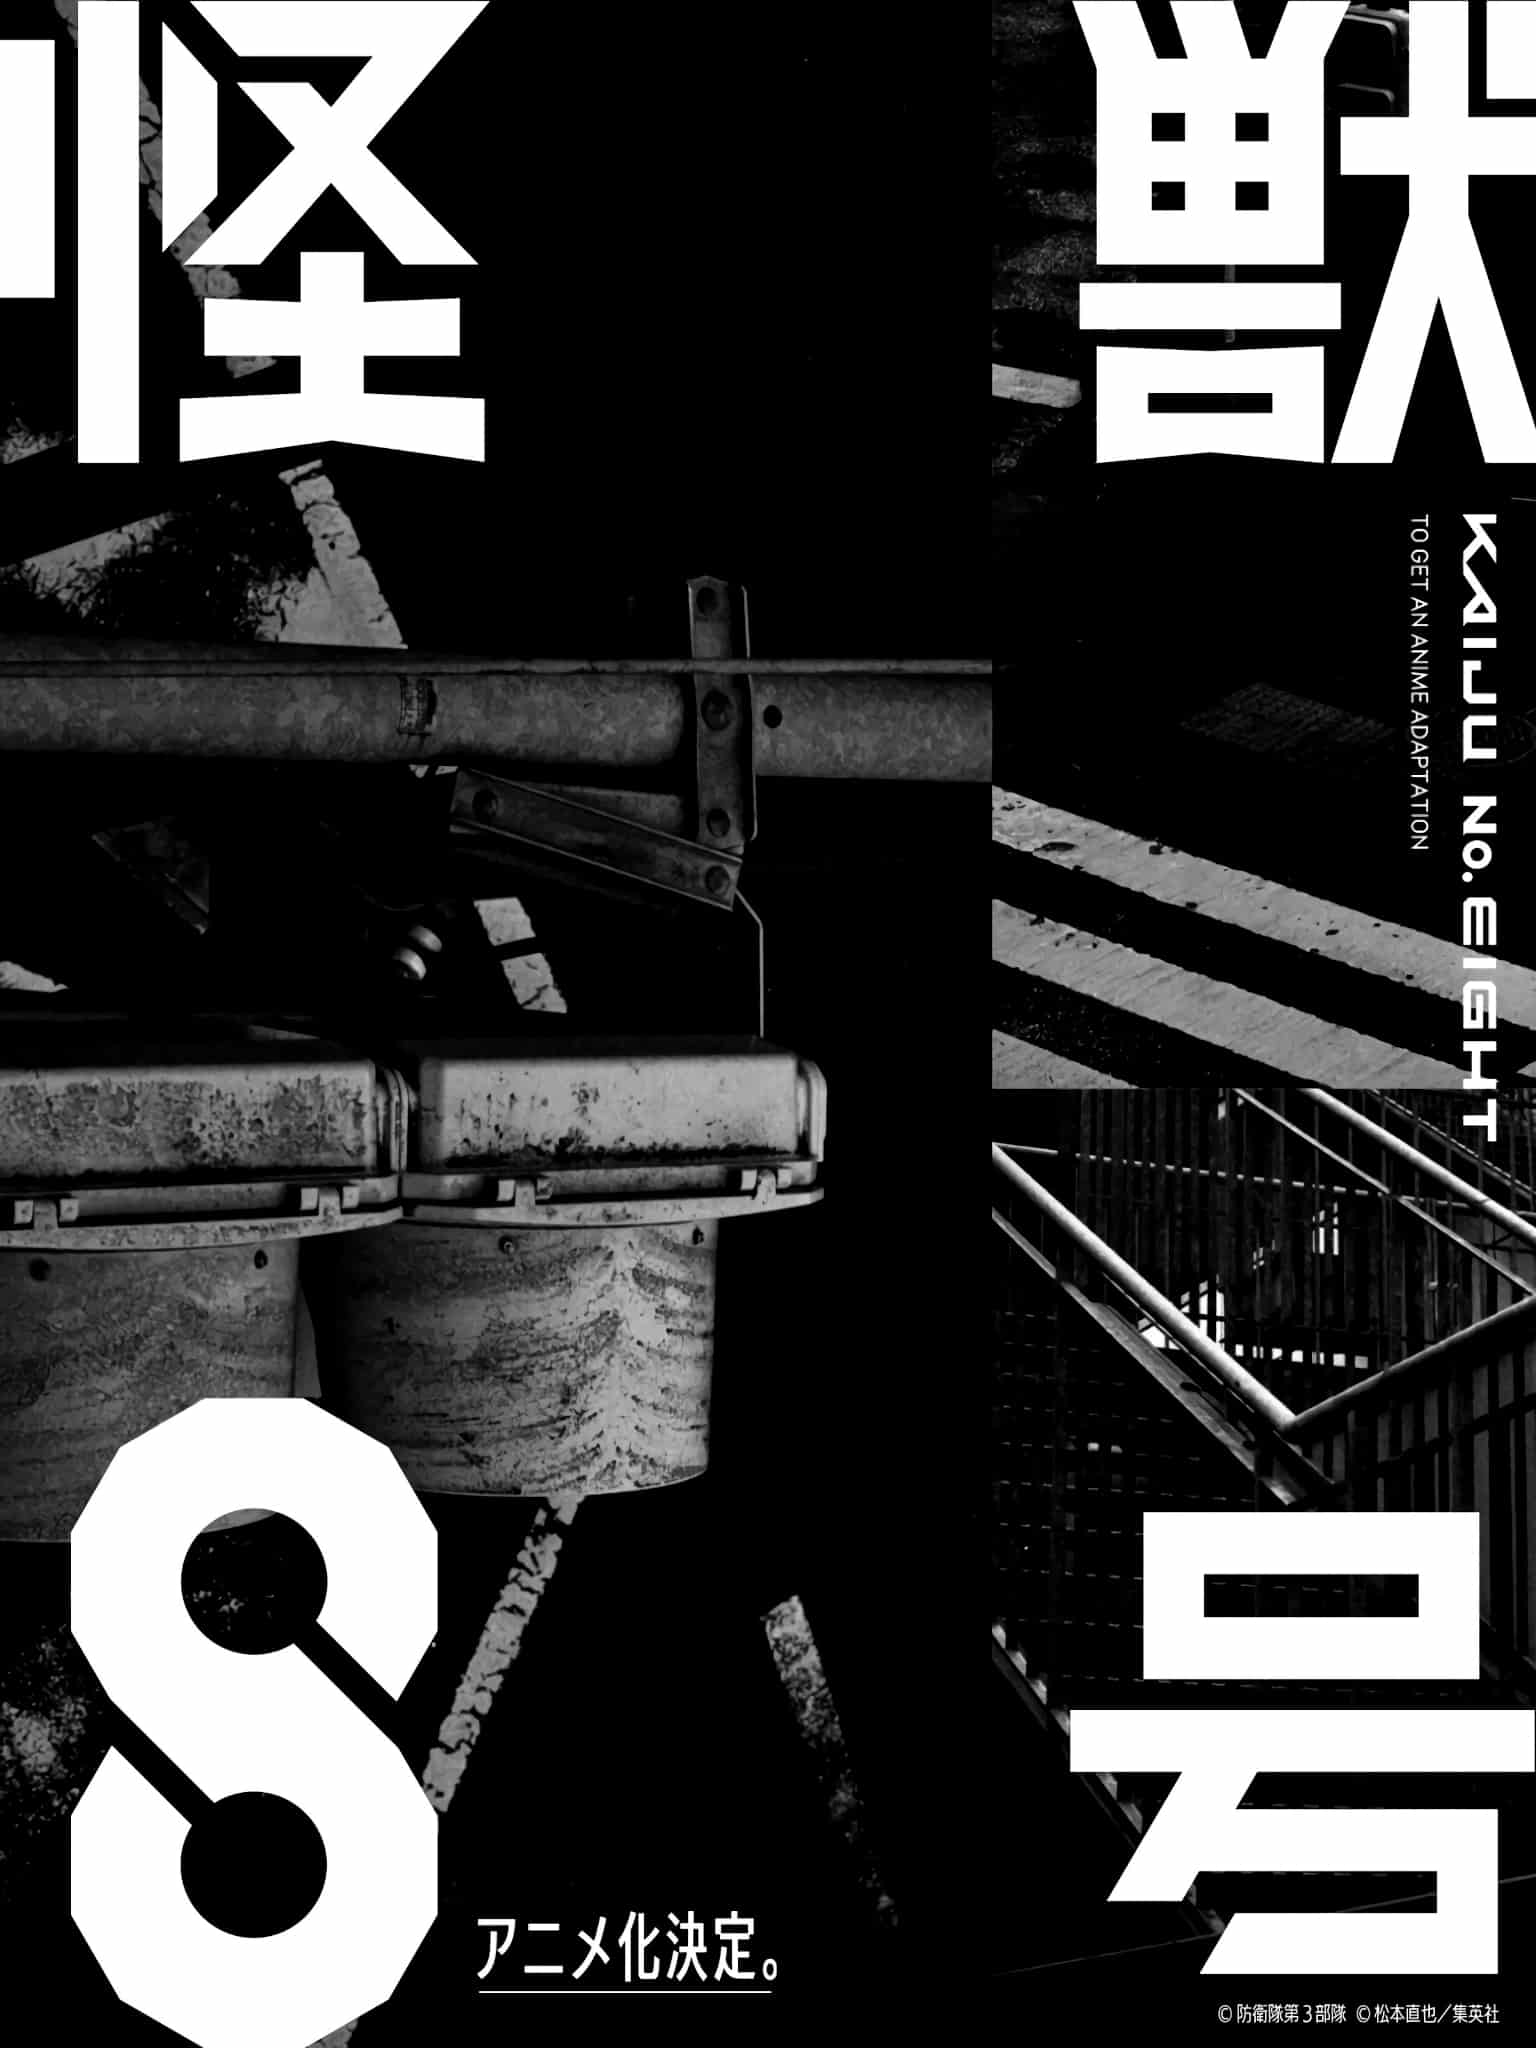 Annonce de lanime Kaiju N°8 (Kaiju No 8) et de sa date de sortie